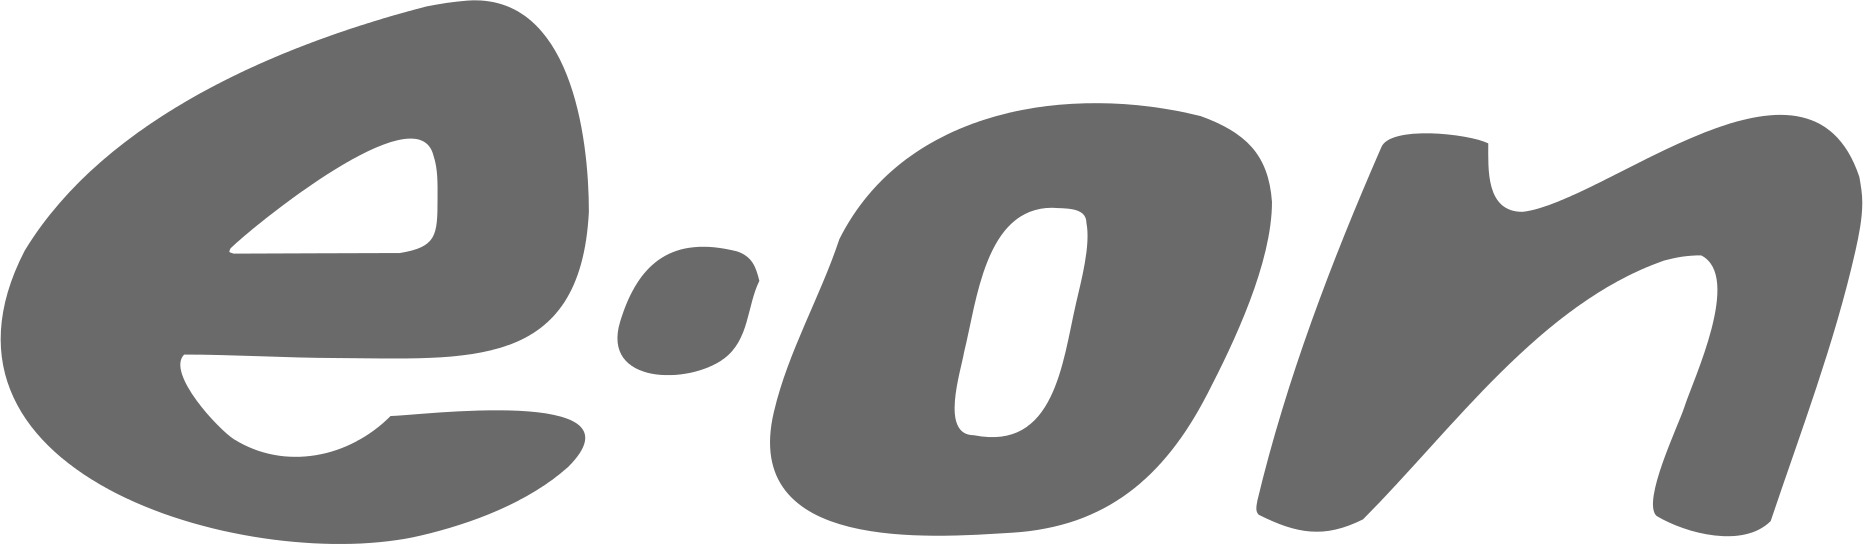 eon-logo copy.png